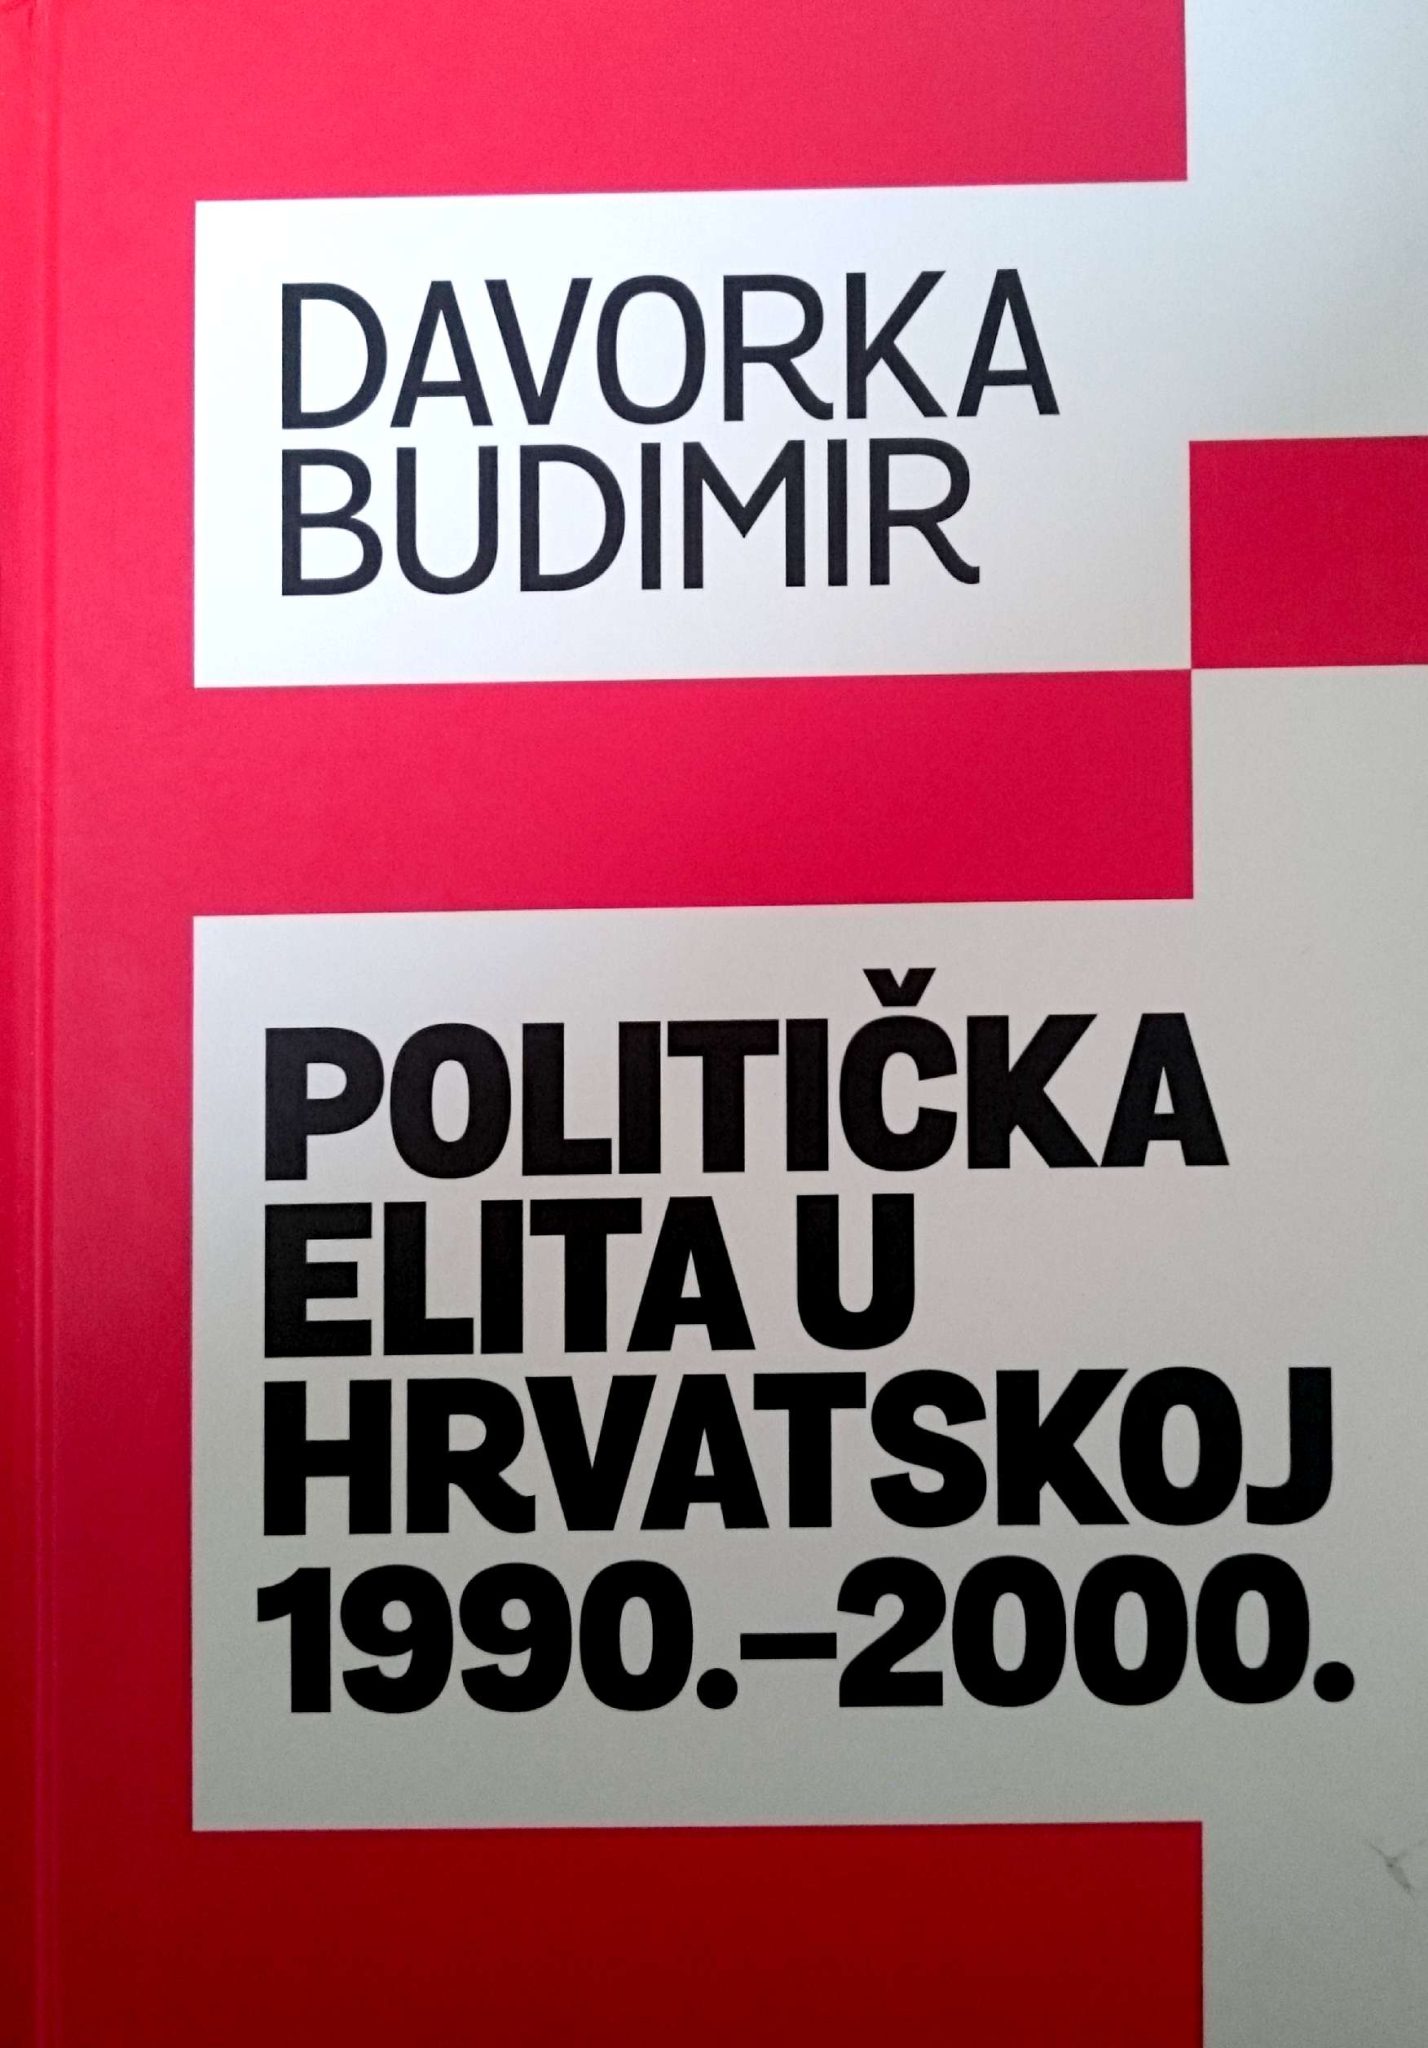 Politička elita u Hrvatskoj 1990.-.2000. Davorka Budimir